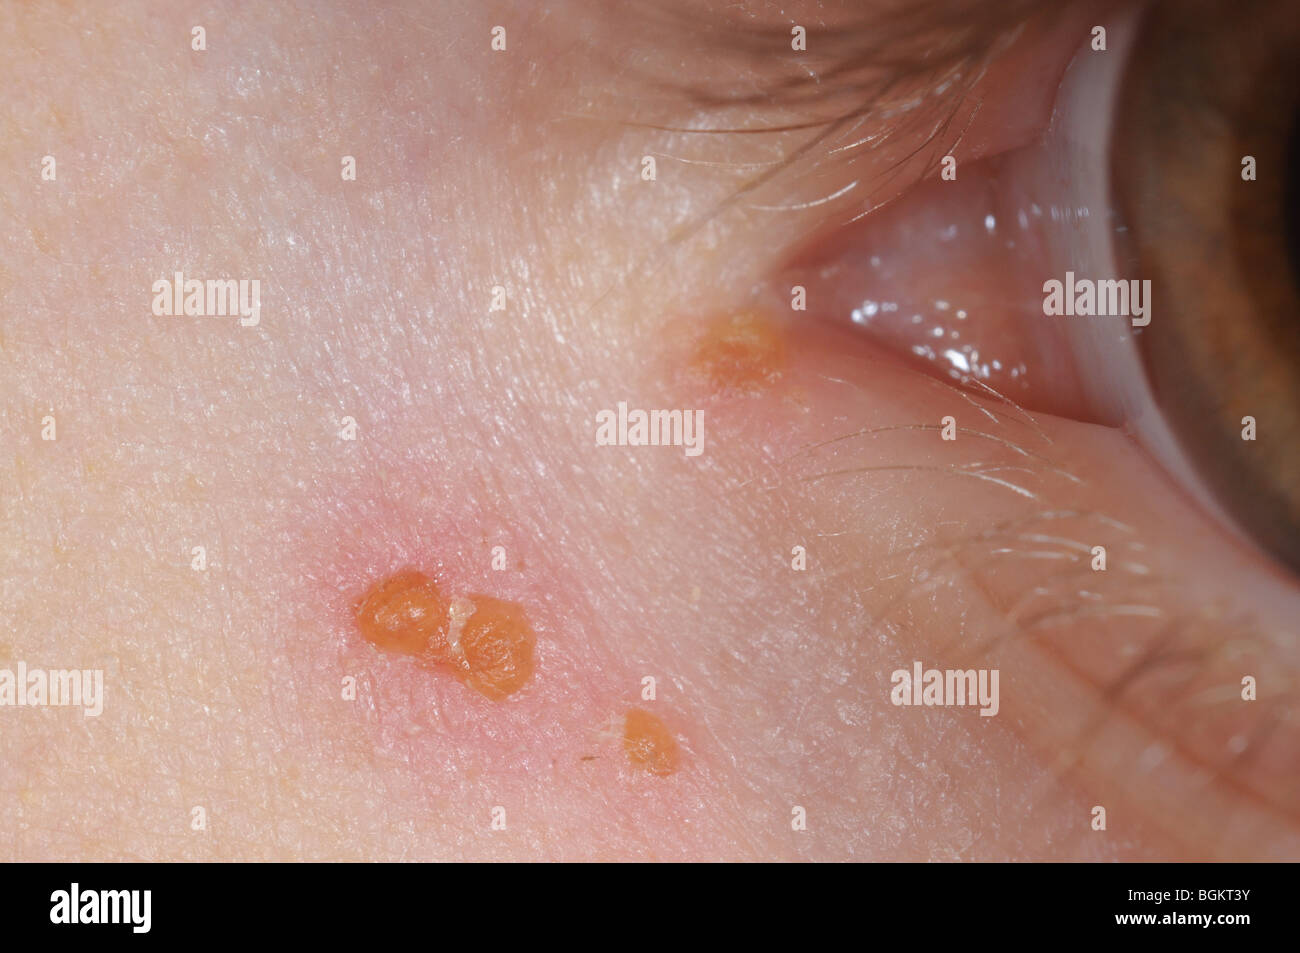 Chicken pox / Chickenpox (Hardin MD / CDC)